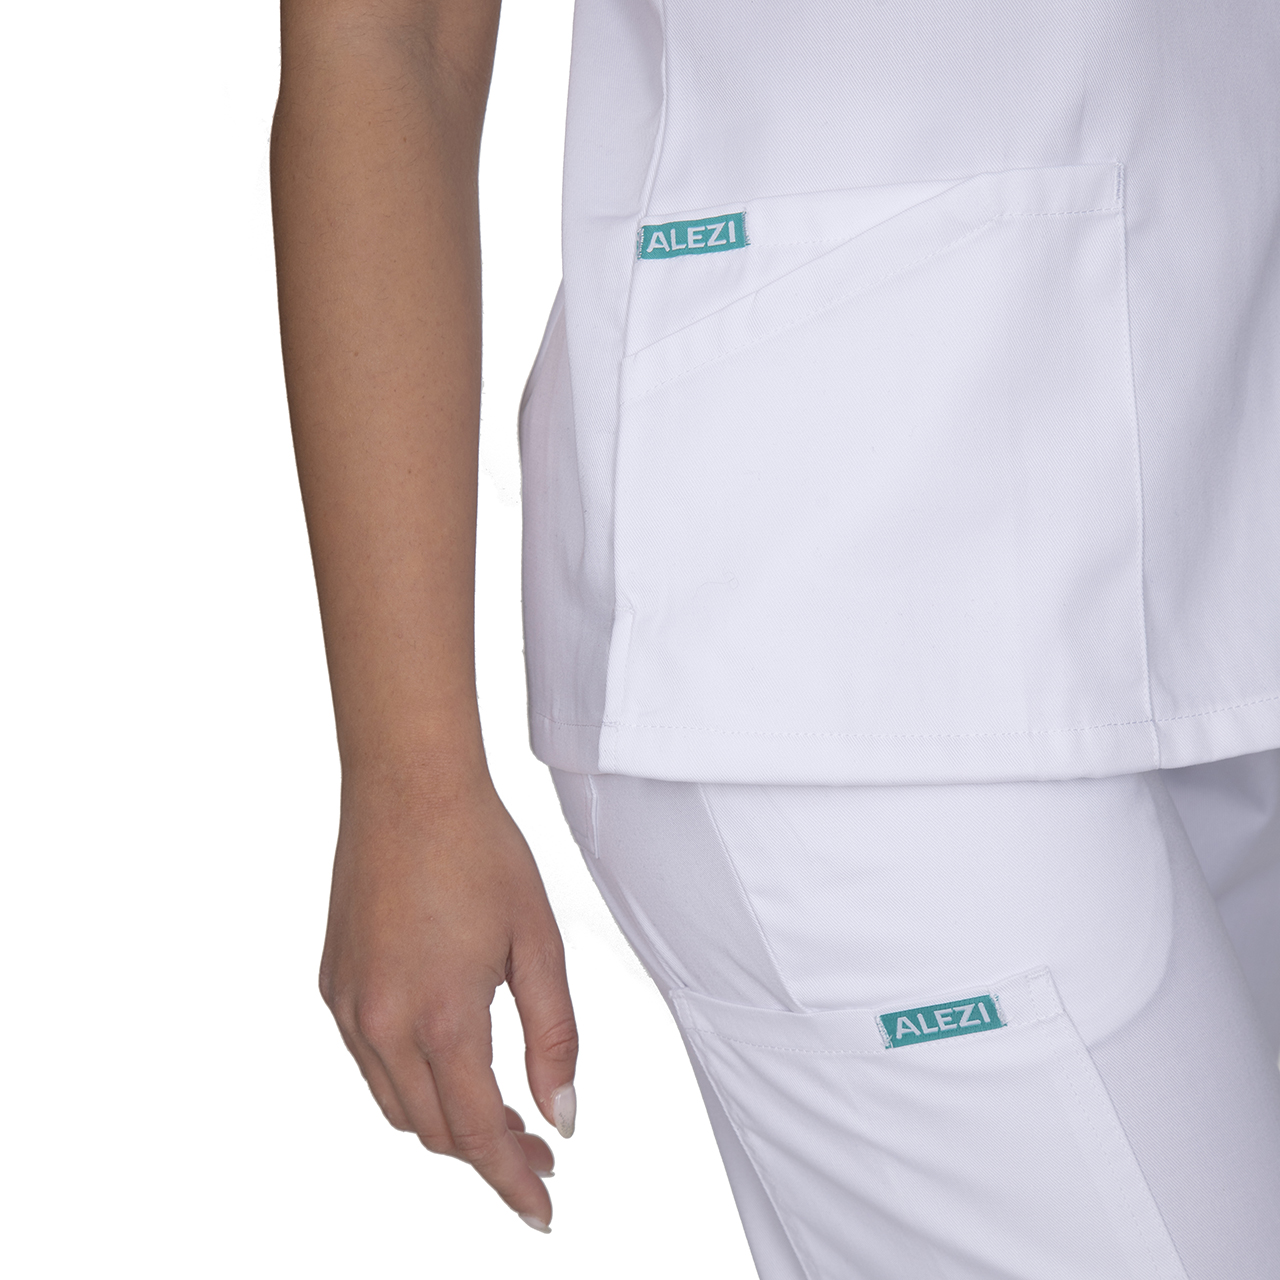 Ιατρική Στολή Γυναικεία Μπλούζα - Παντελόνι (Σετ) Λευκό 